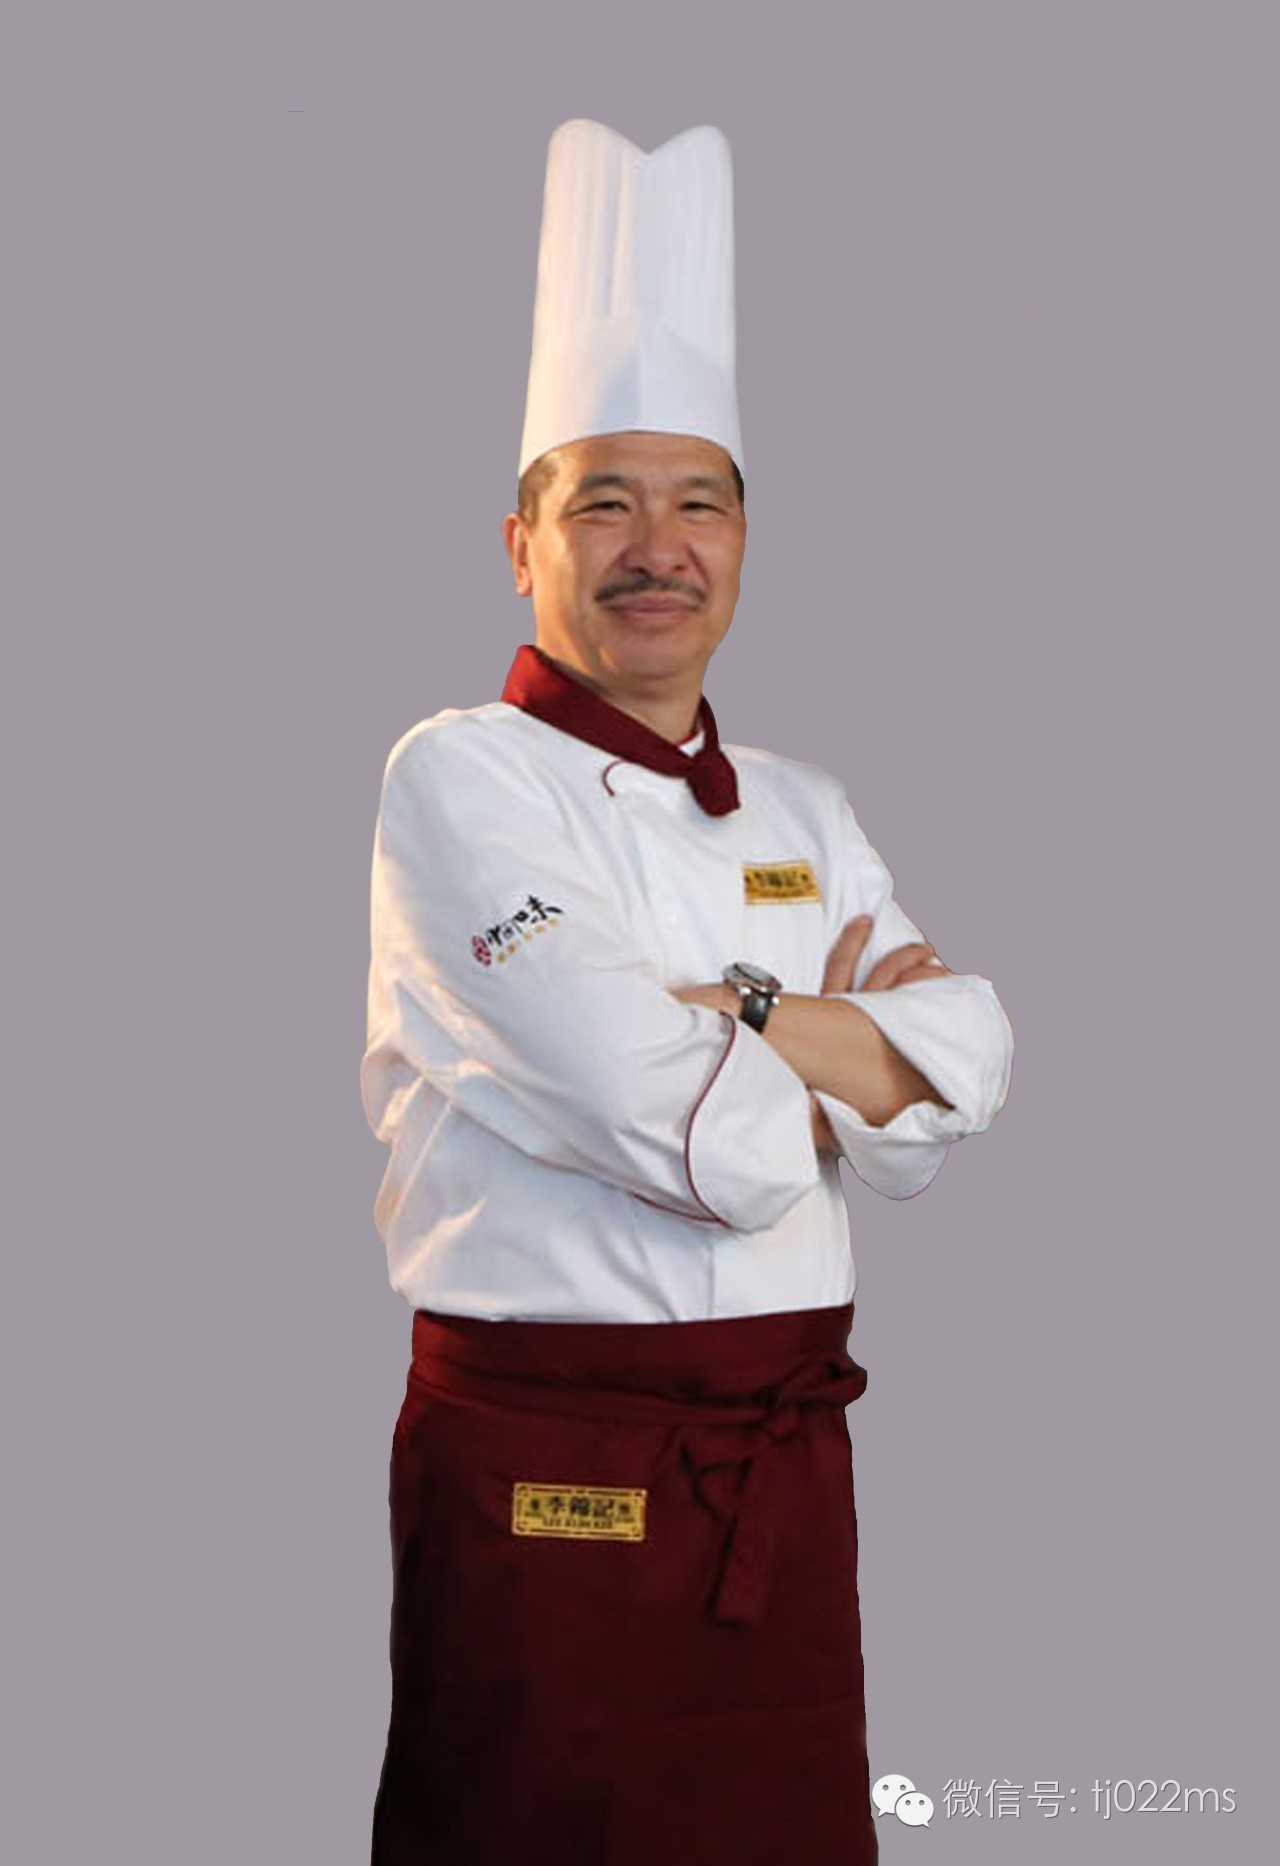 林镇国 粤菜大师林镇国,是世界中餐名厨交流协会理事长,澳门烹饪协会